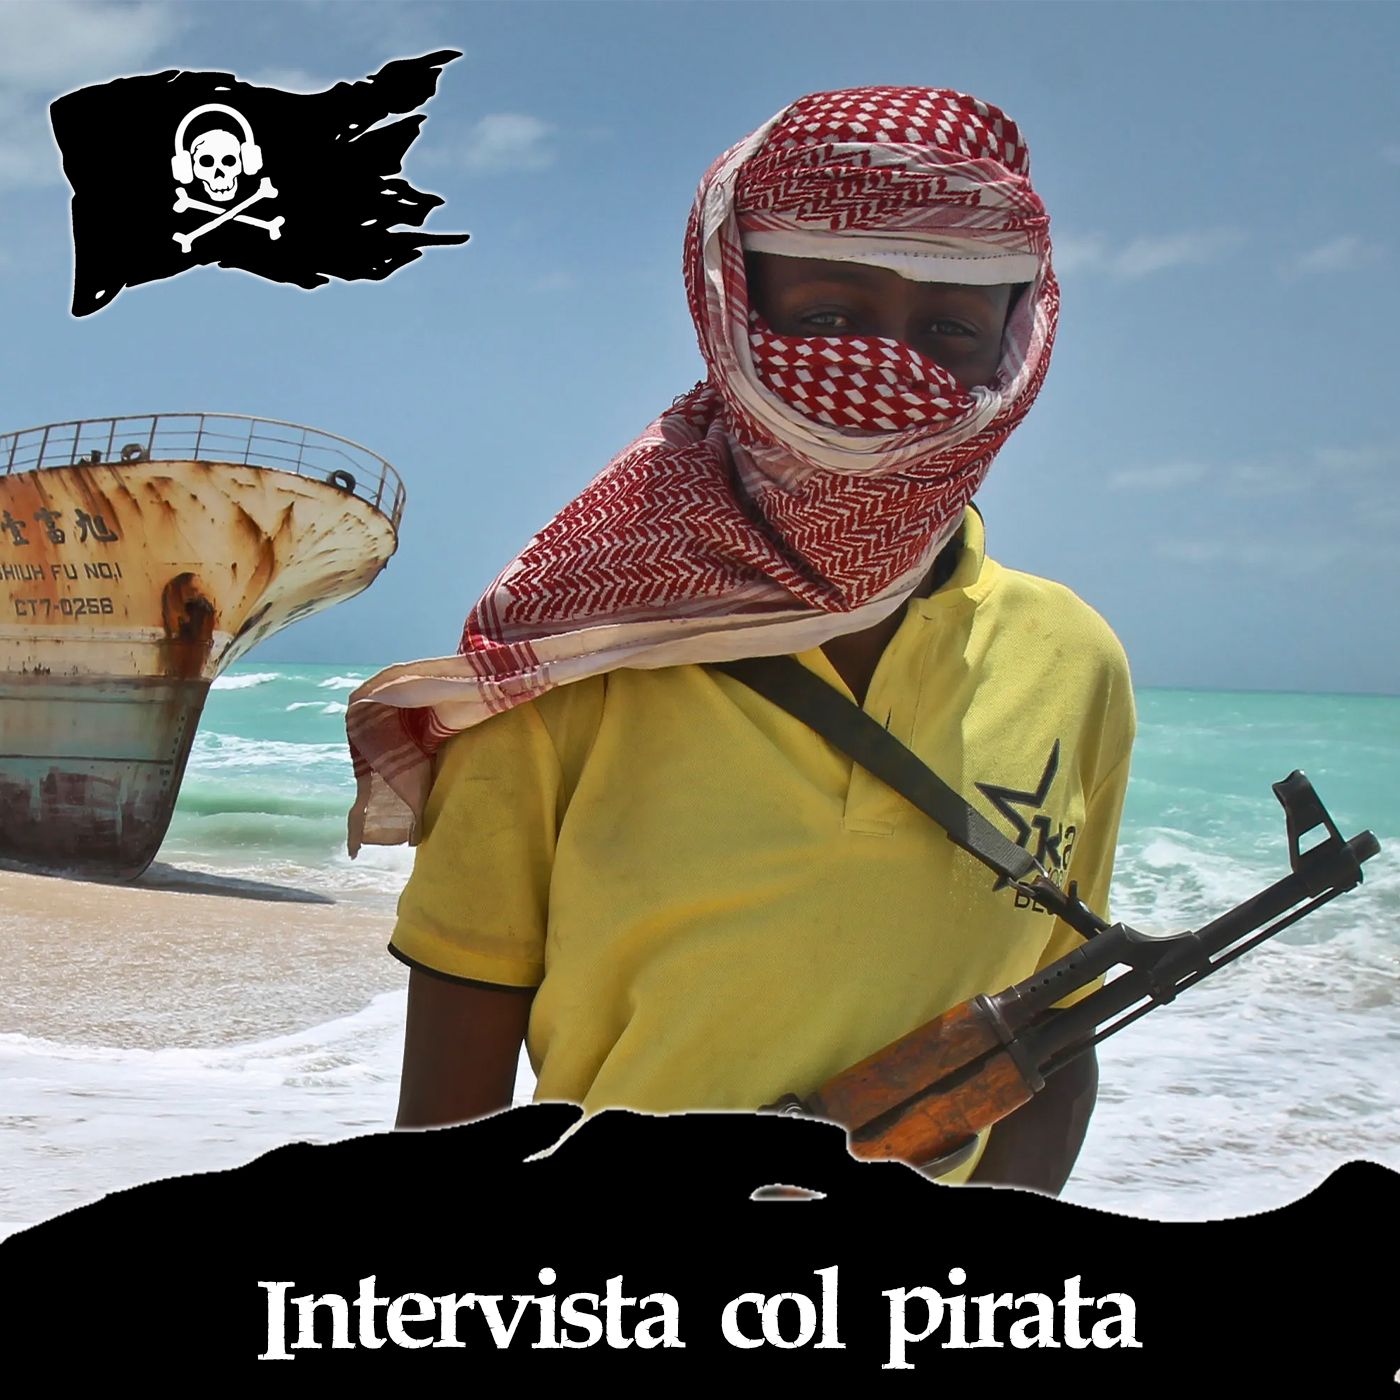 81 - Intervista col pirata